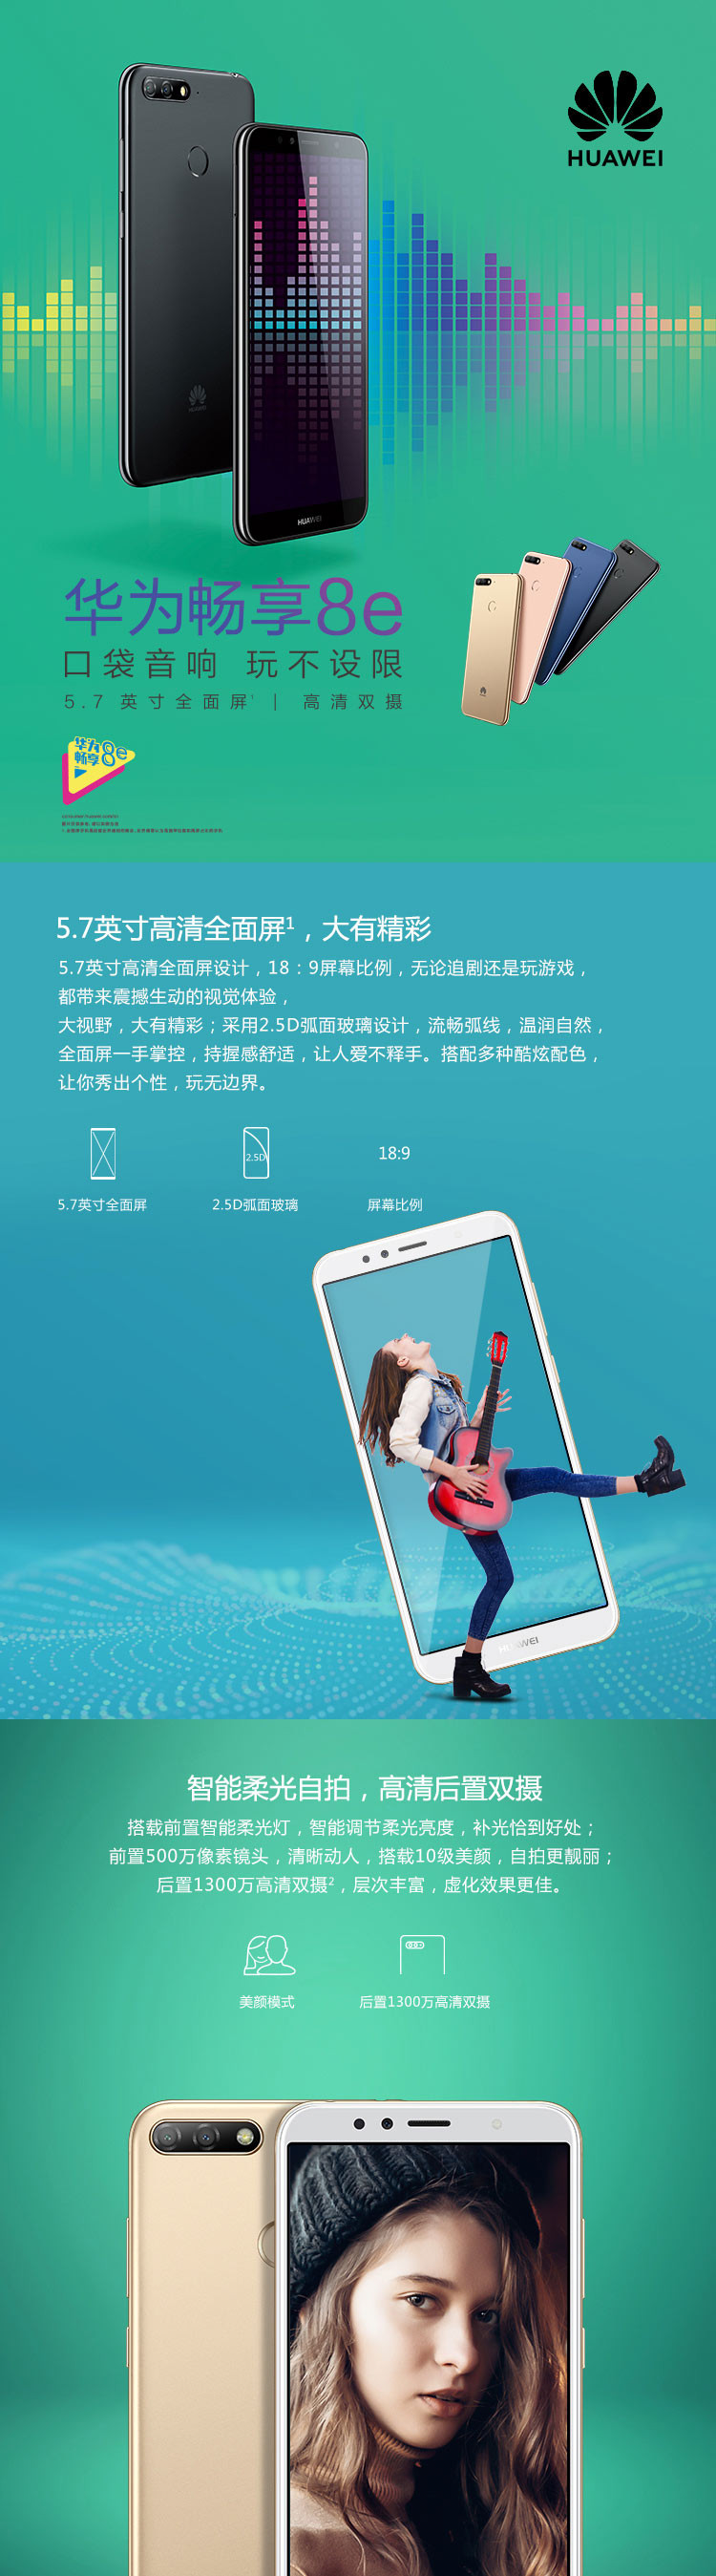 HUAWEI/华为畅享8e 3G+32G 蓝色黑色金色移动联通电信4G手机